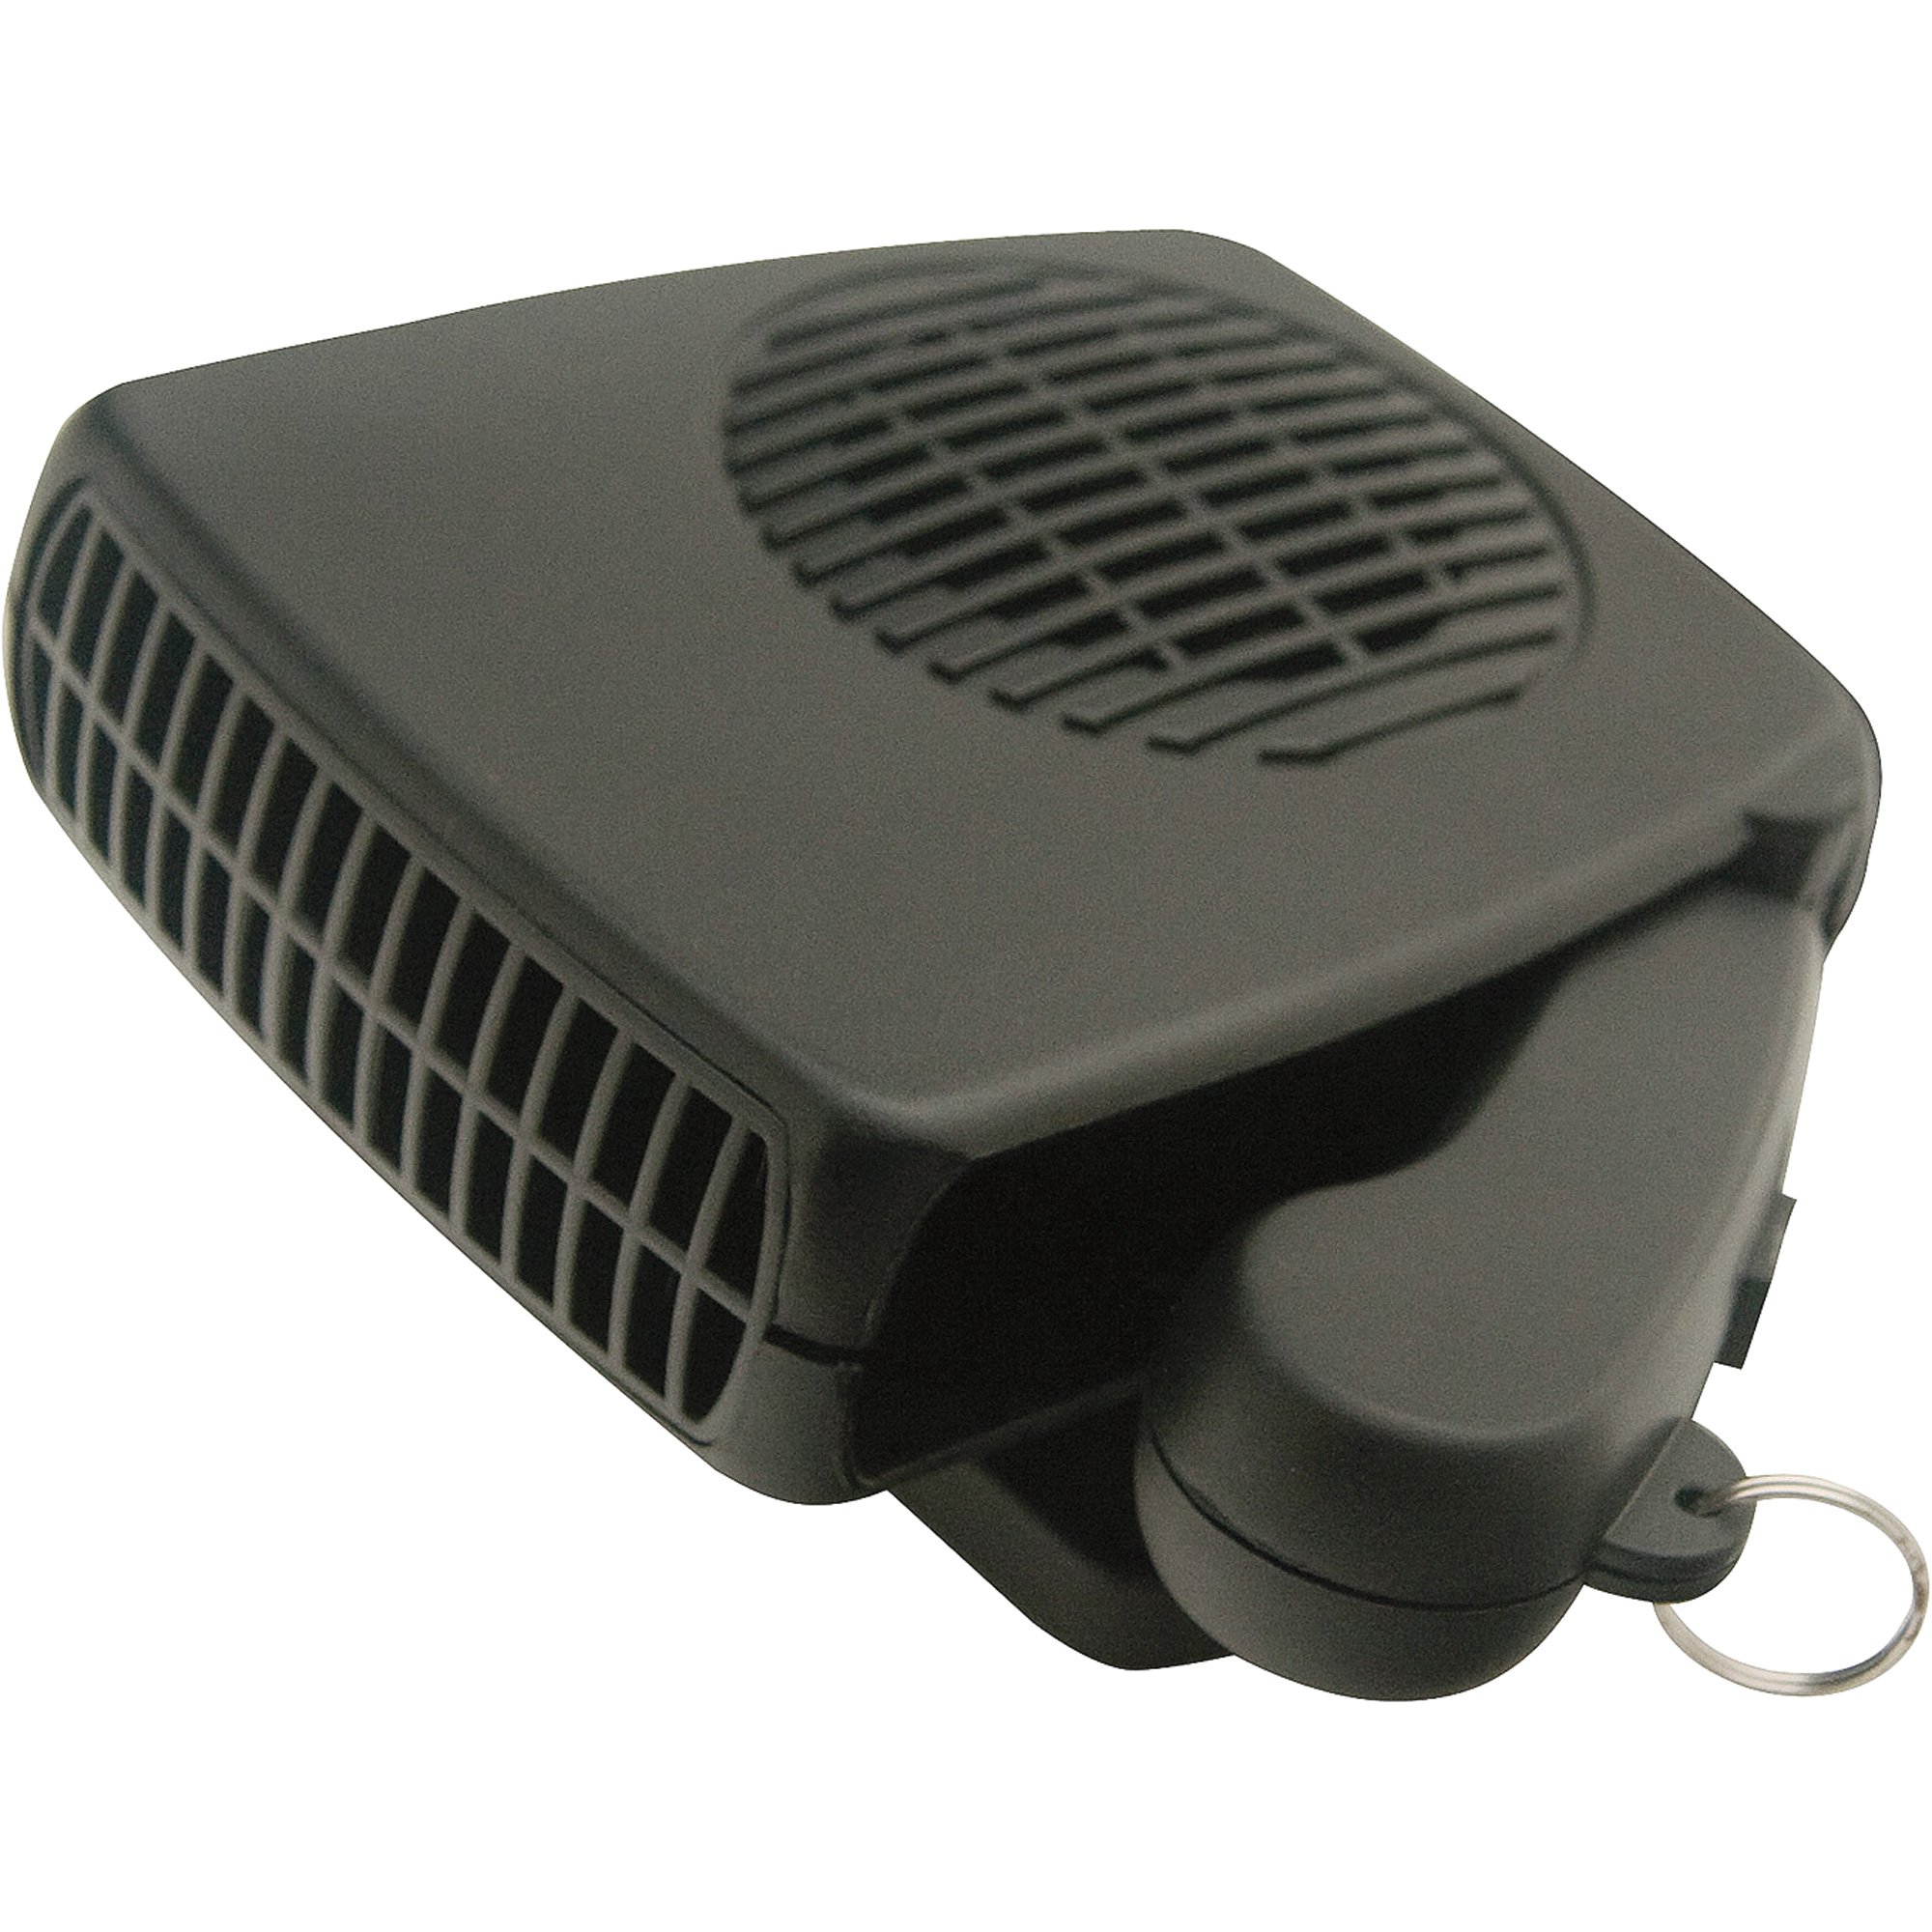 MJL Sales Car Heater and Defroster — 12V, Model#